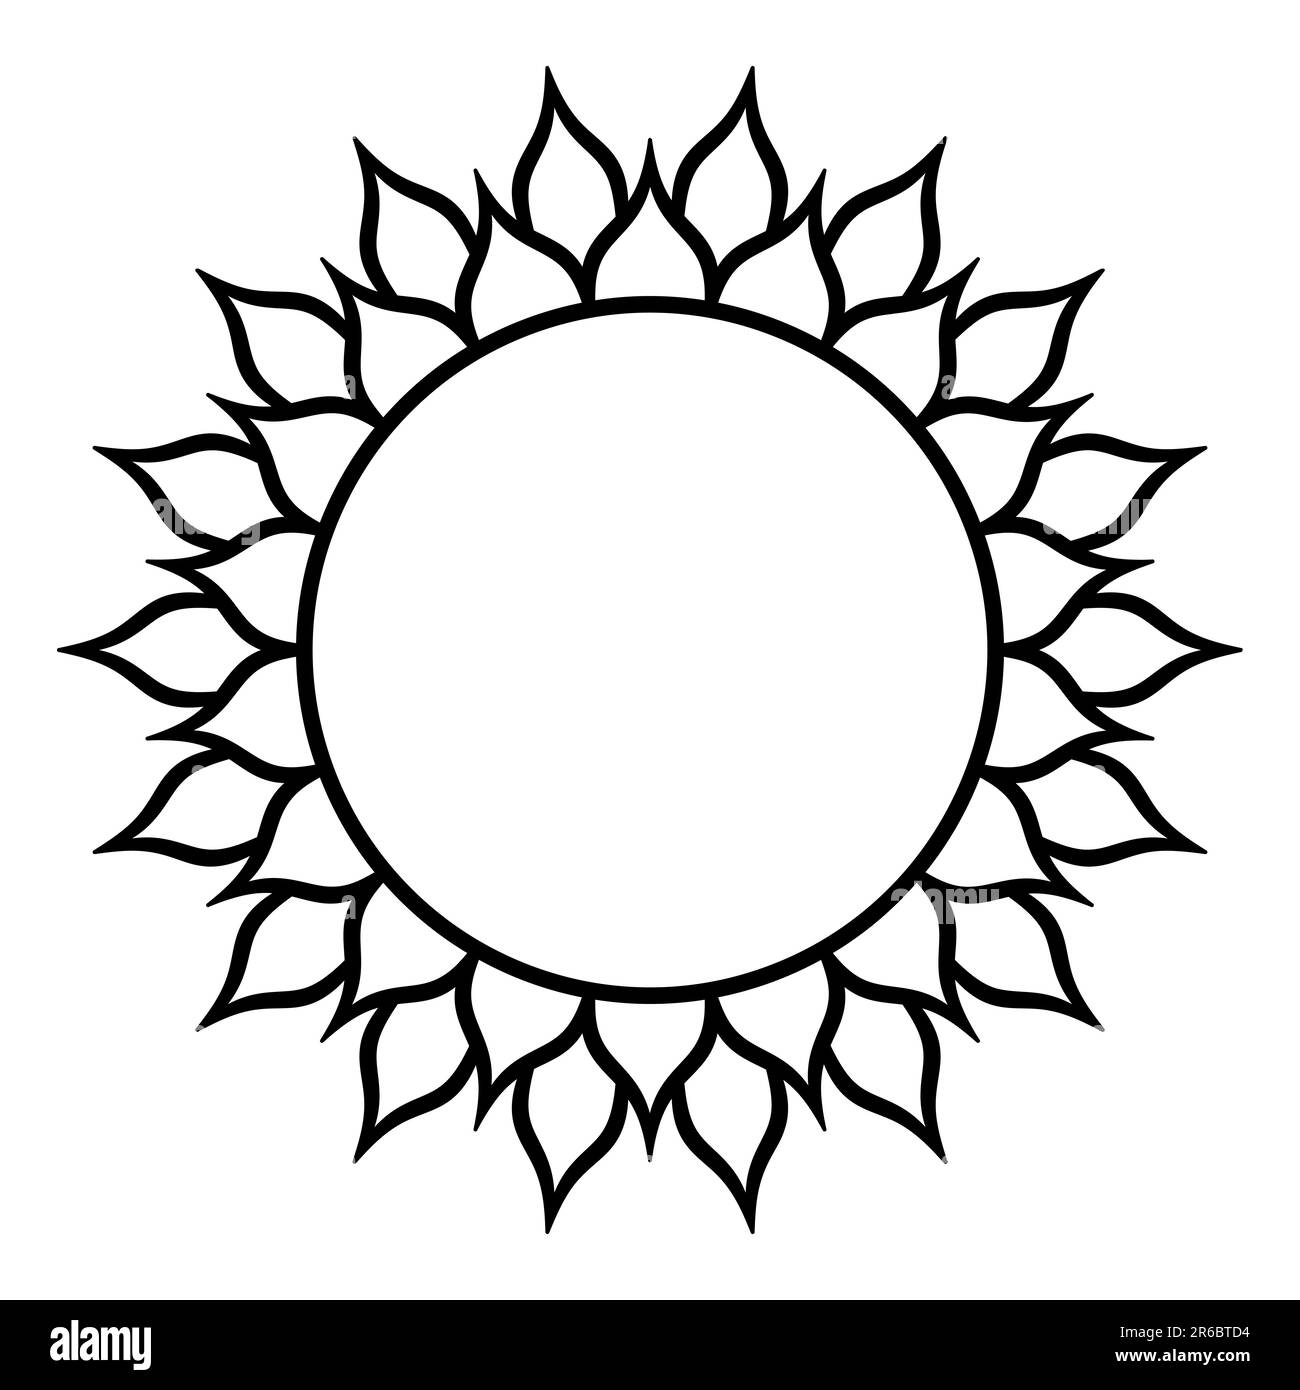 Sonnenblumensymbol mit zwei mal achtzehn Blütenblättern oder Sonnensymbol mit 36 Flammen. Heilige Geometrie, modelliert auf einem Kreismuster. Stockfoto